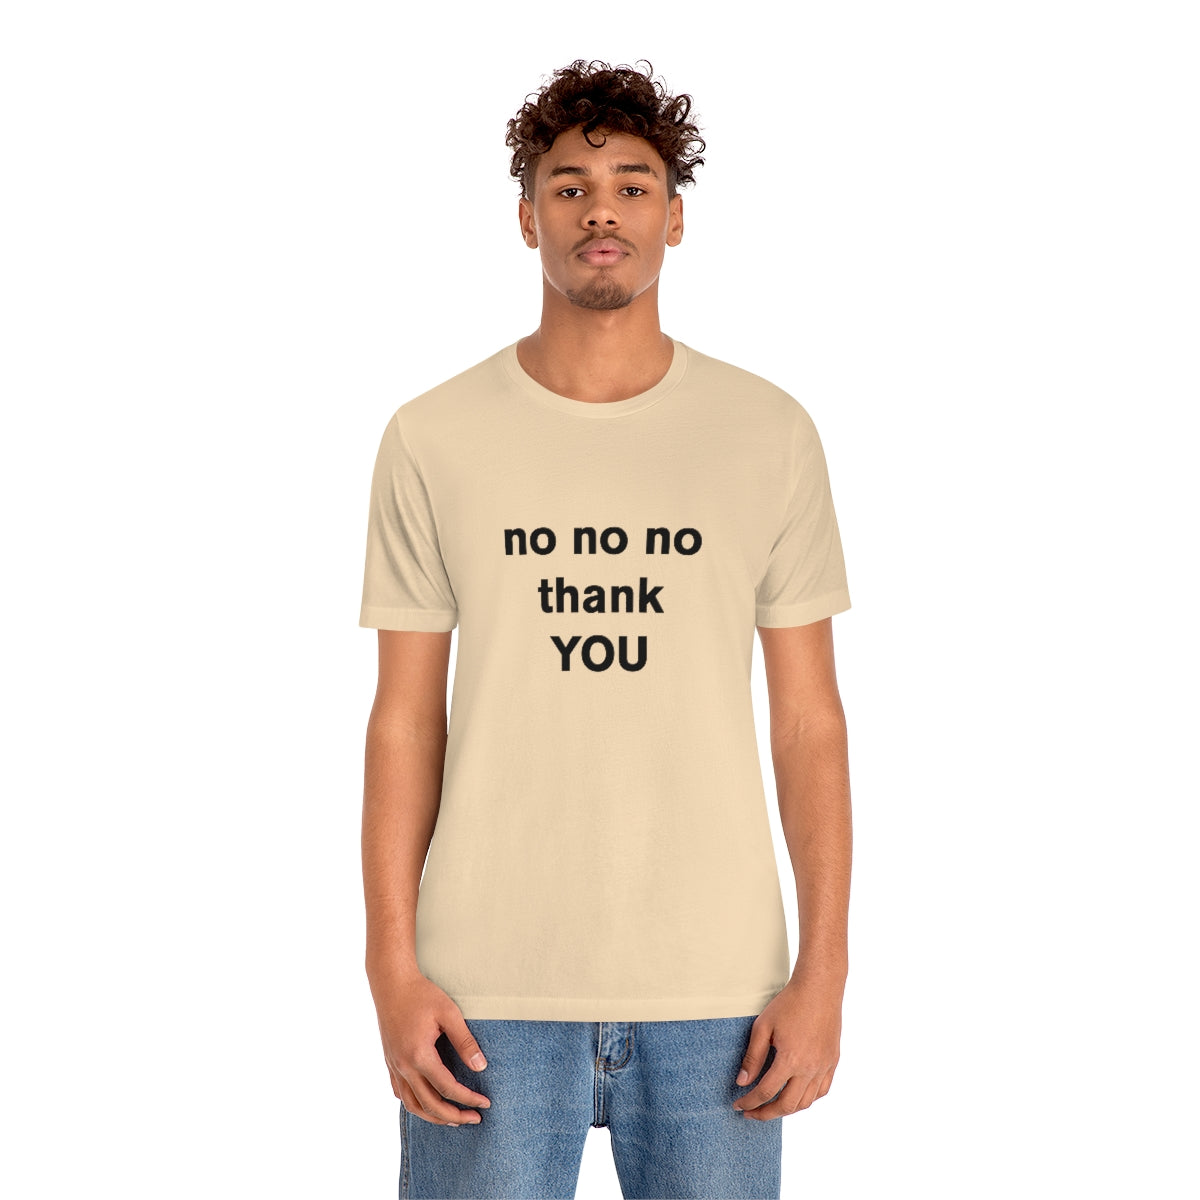 no no no thank YOU - t-shirt